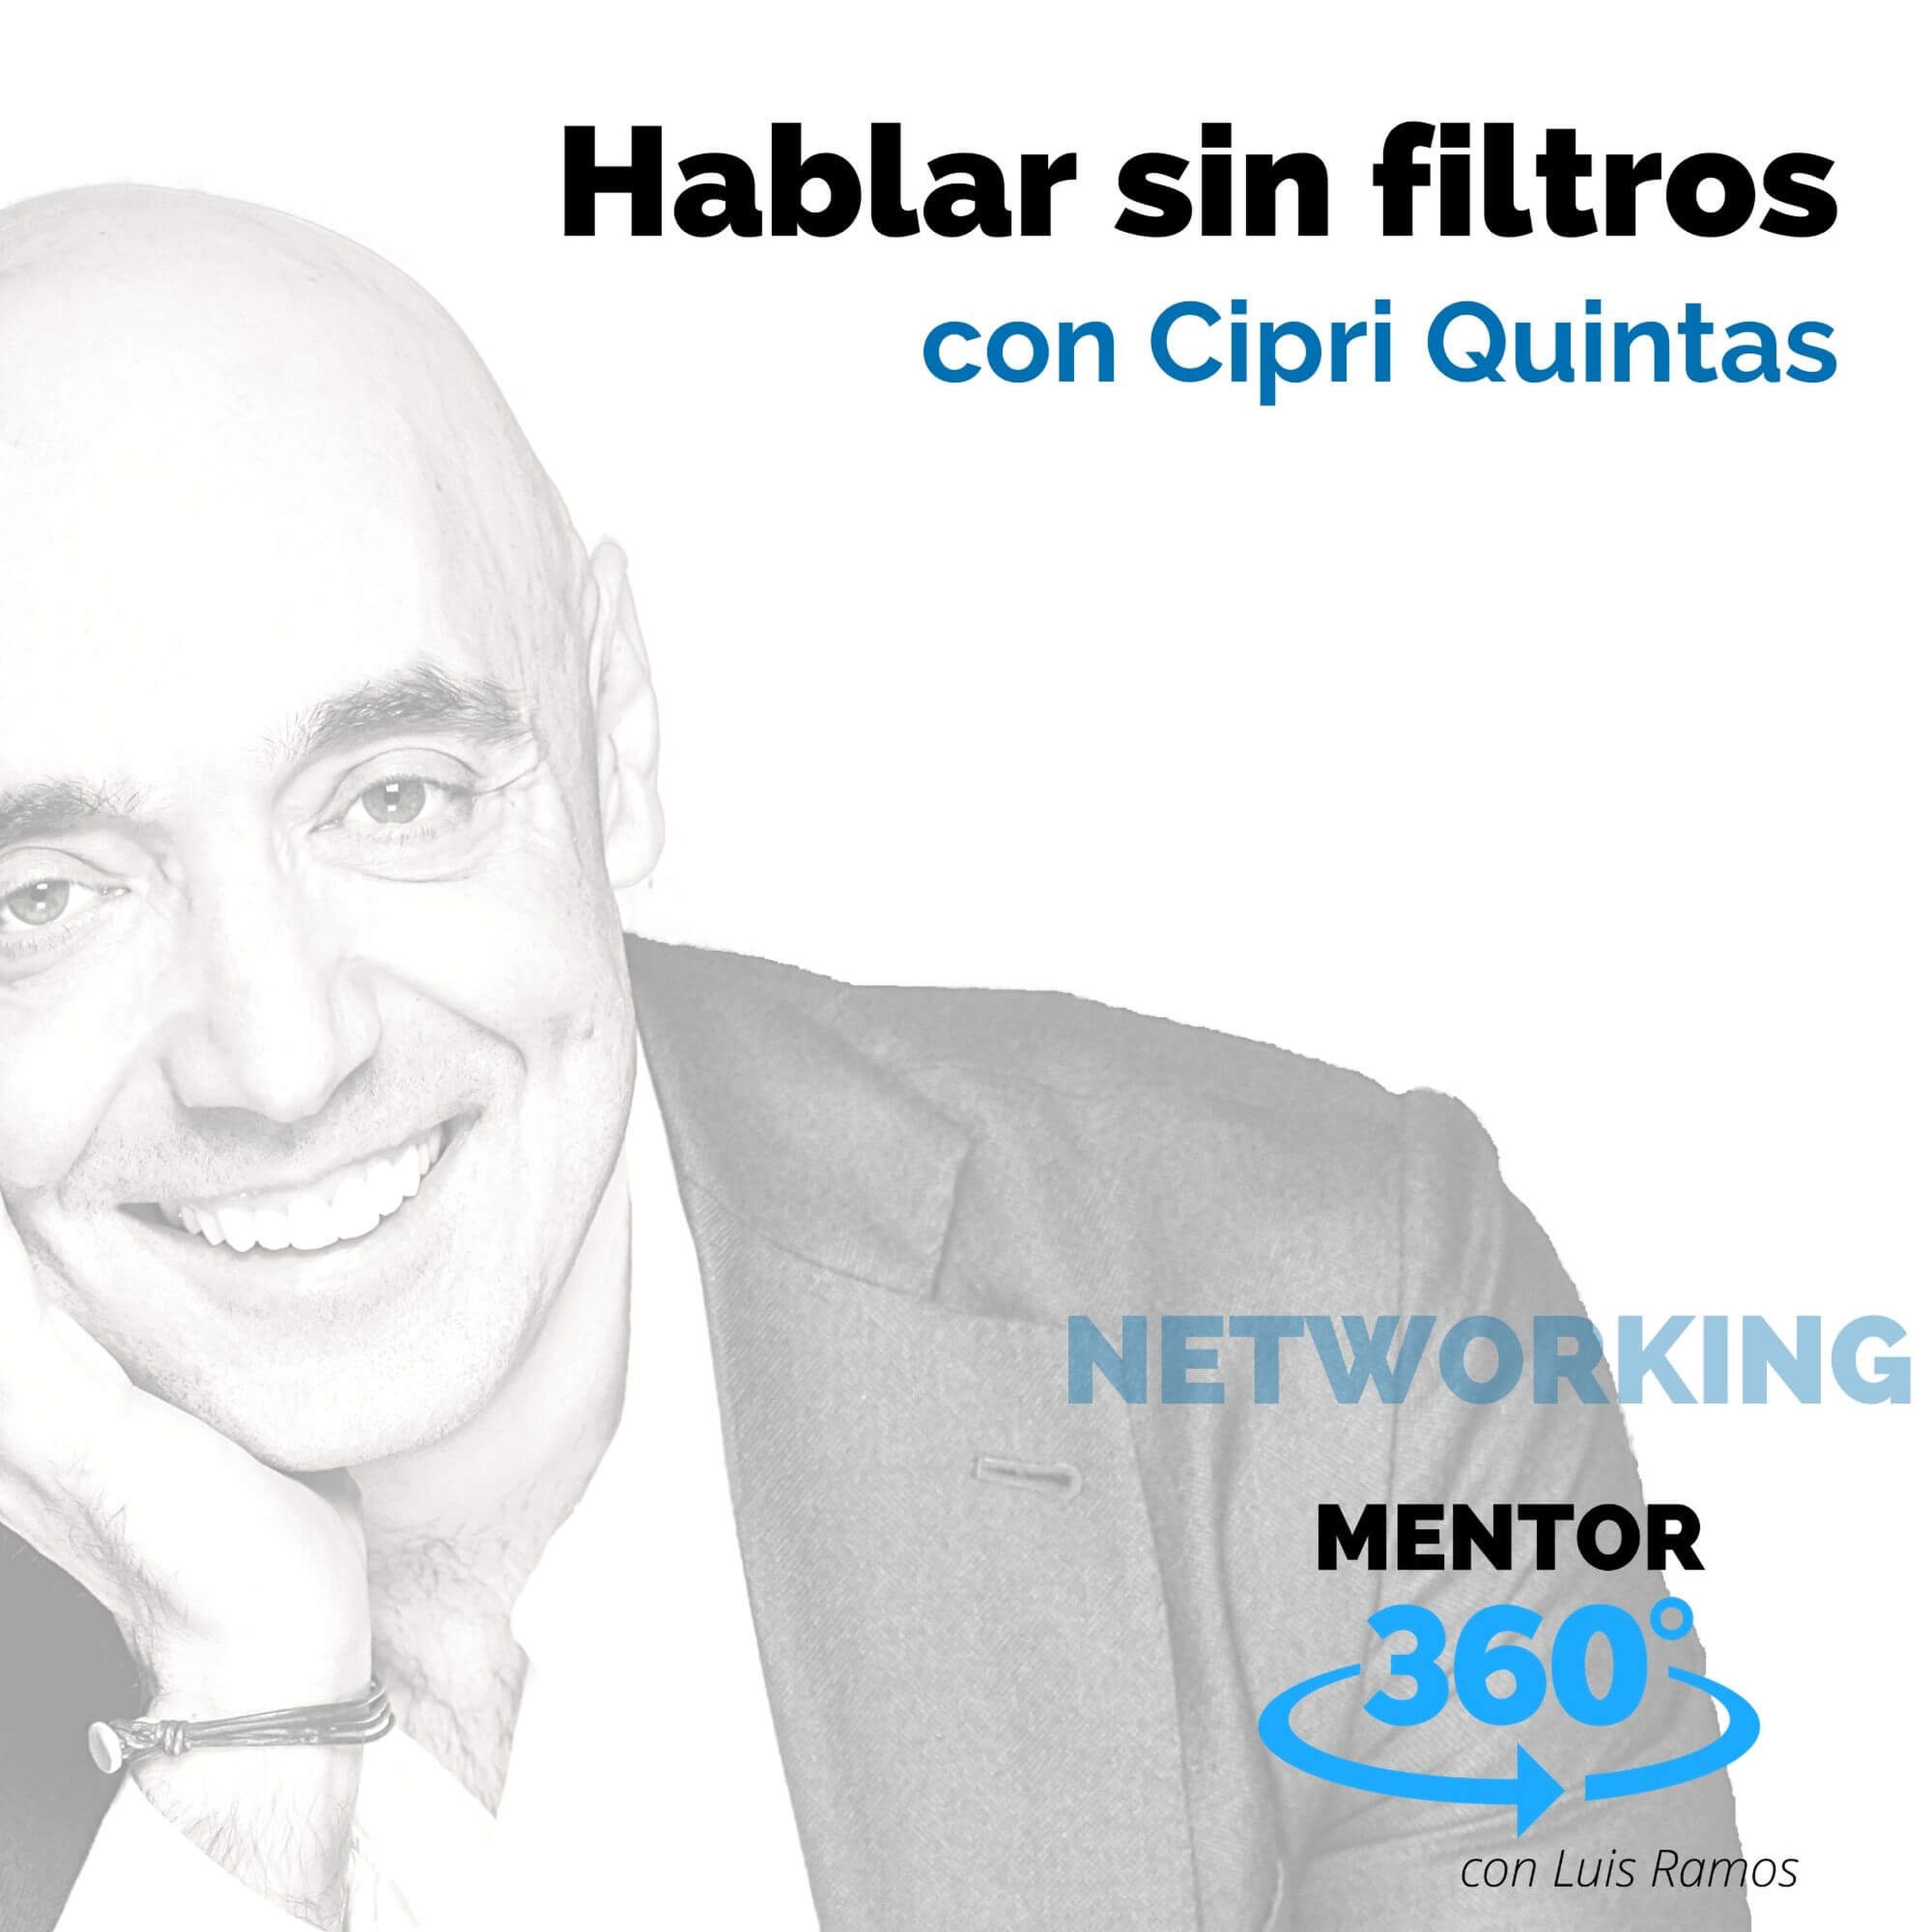 Hablar sin filtros, con Cipri Quintas - NETWORKING